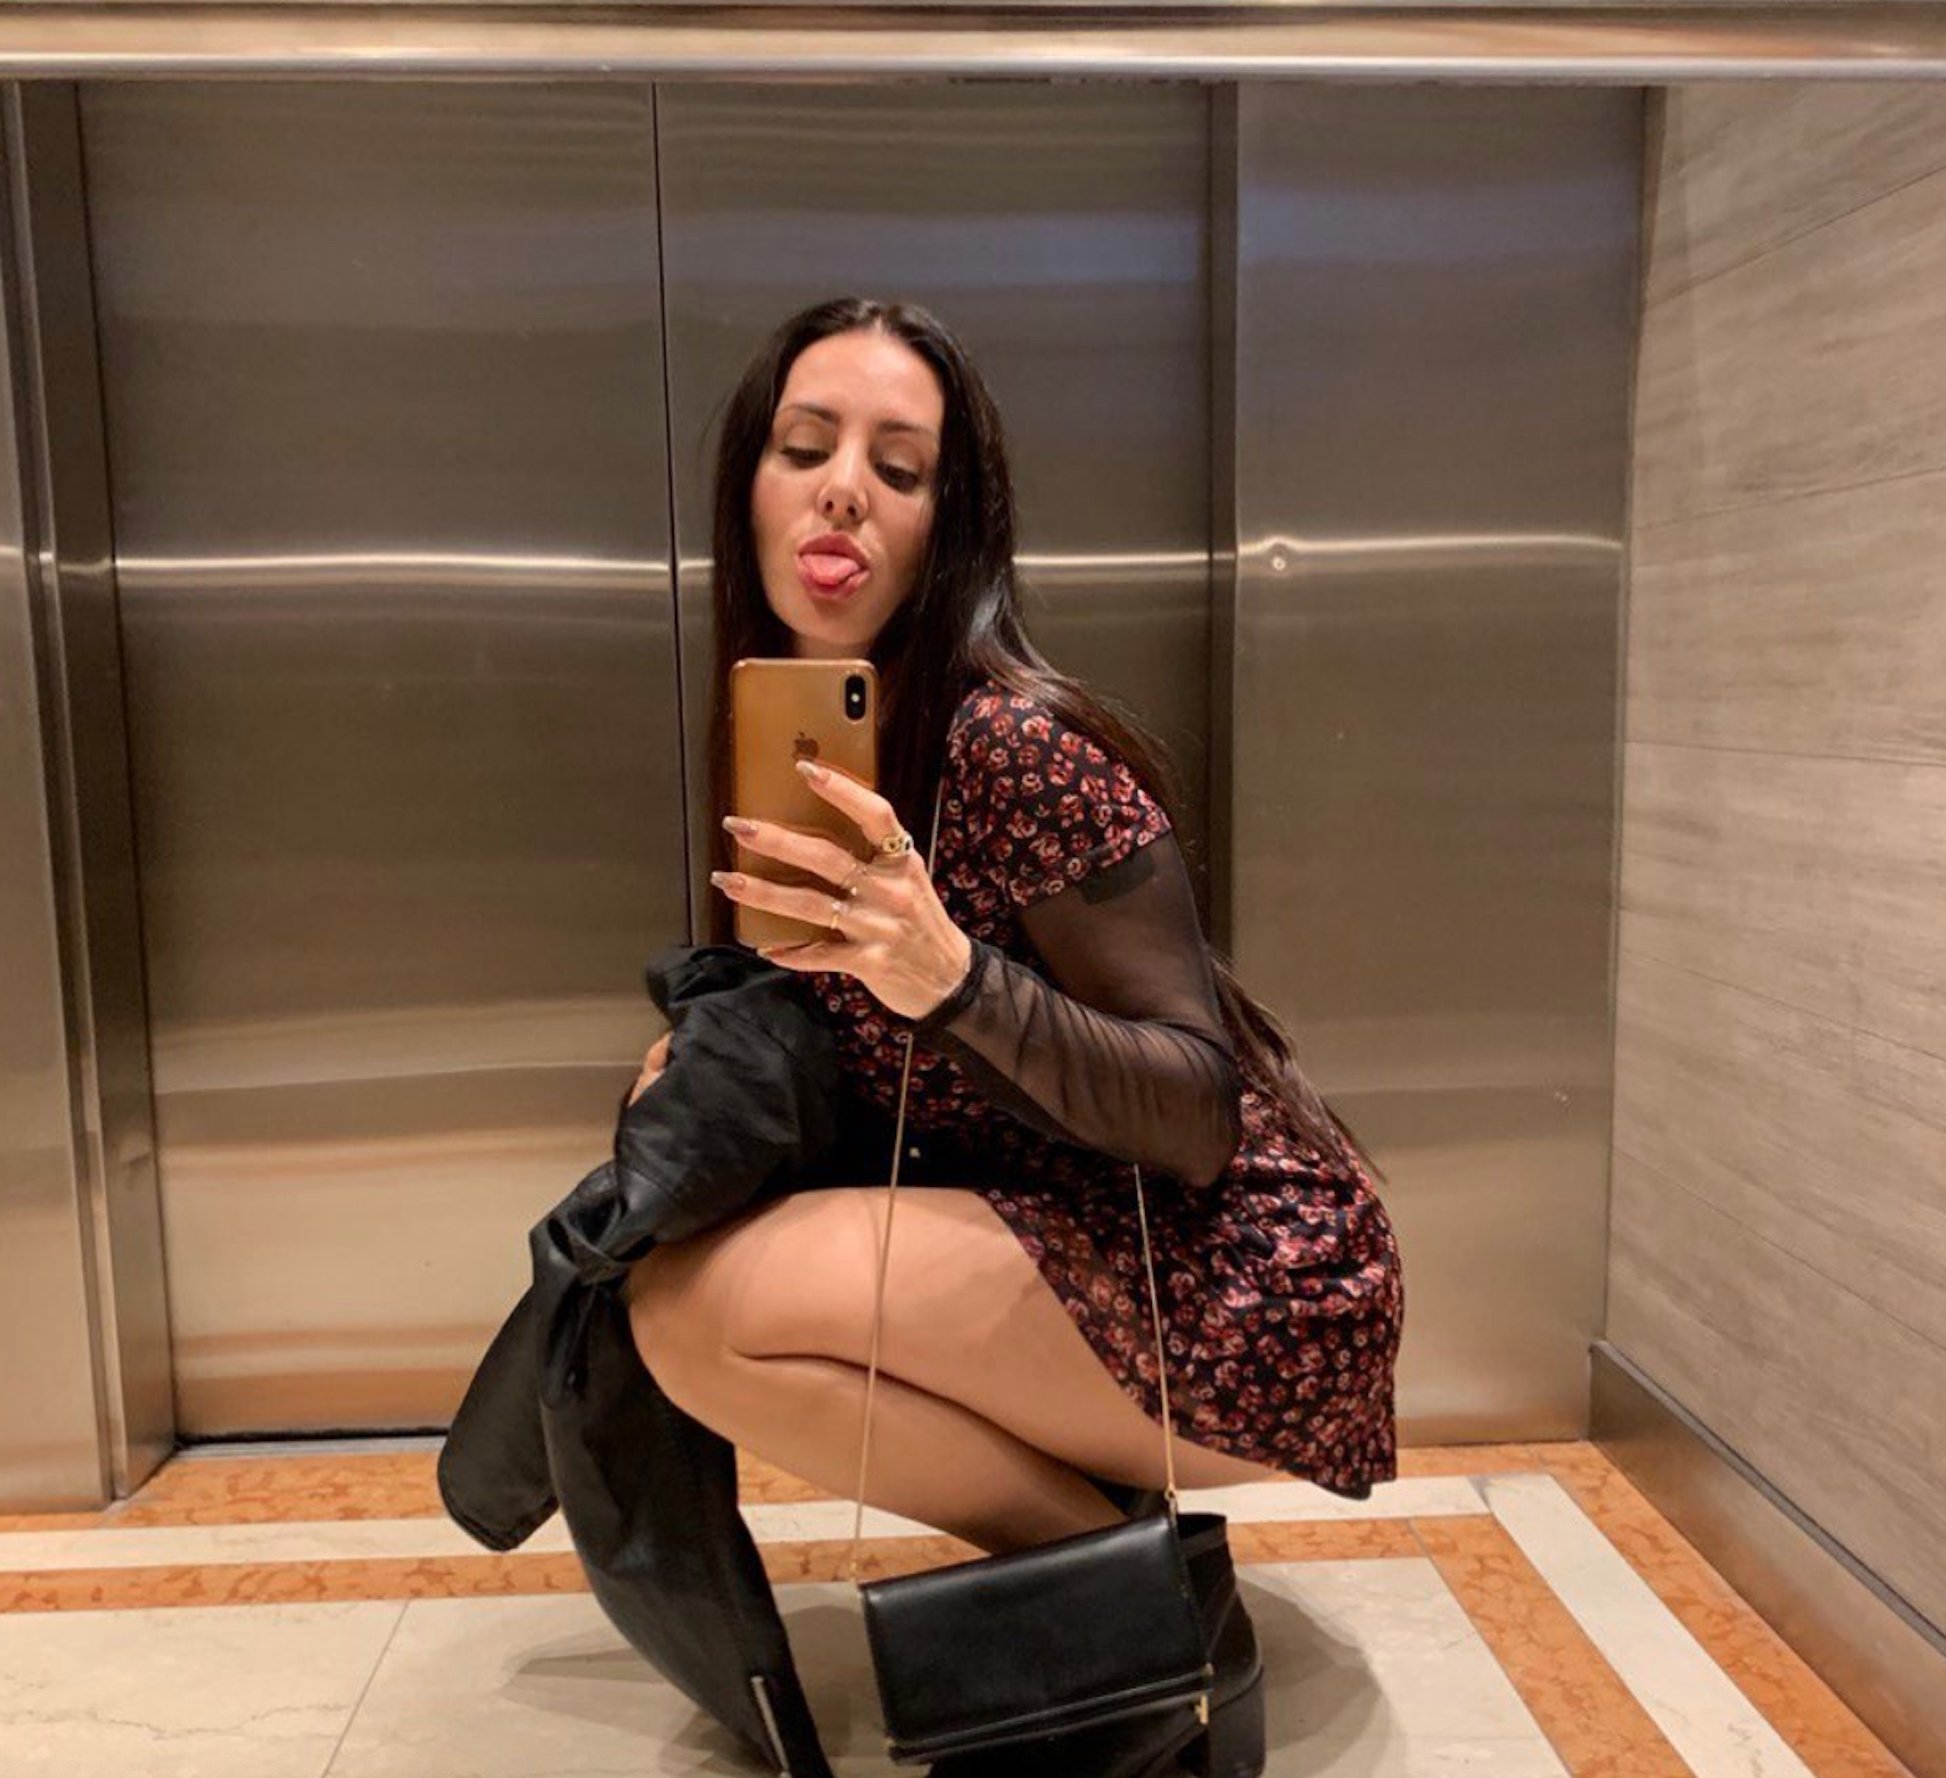 Mala Rodríguez en el ascensor @malarodriguez